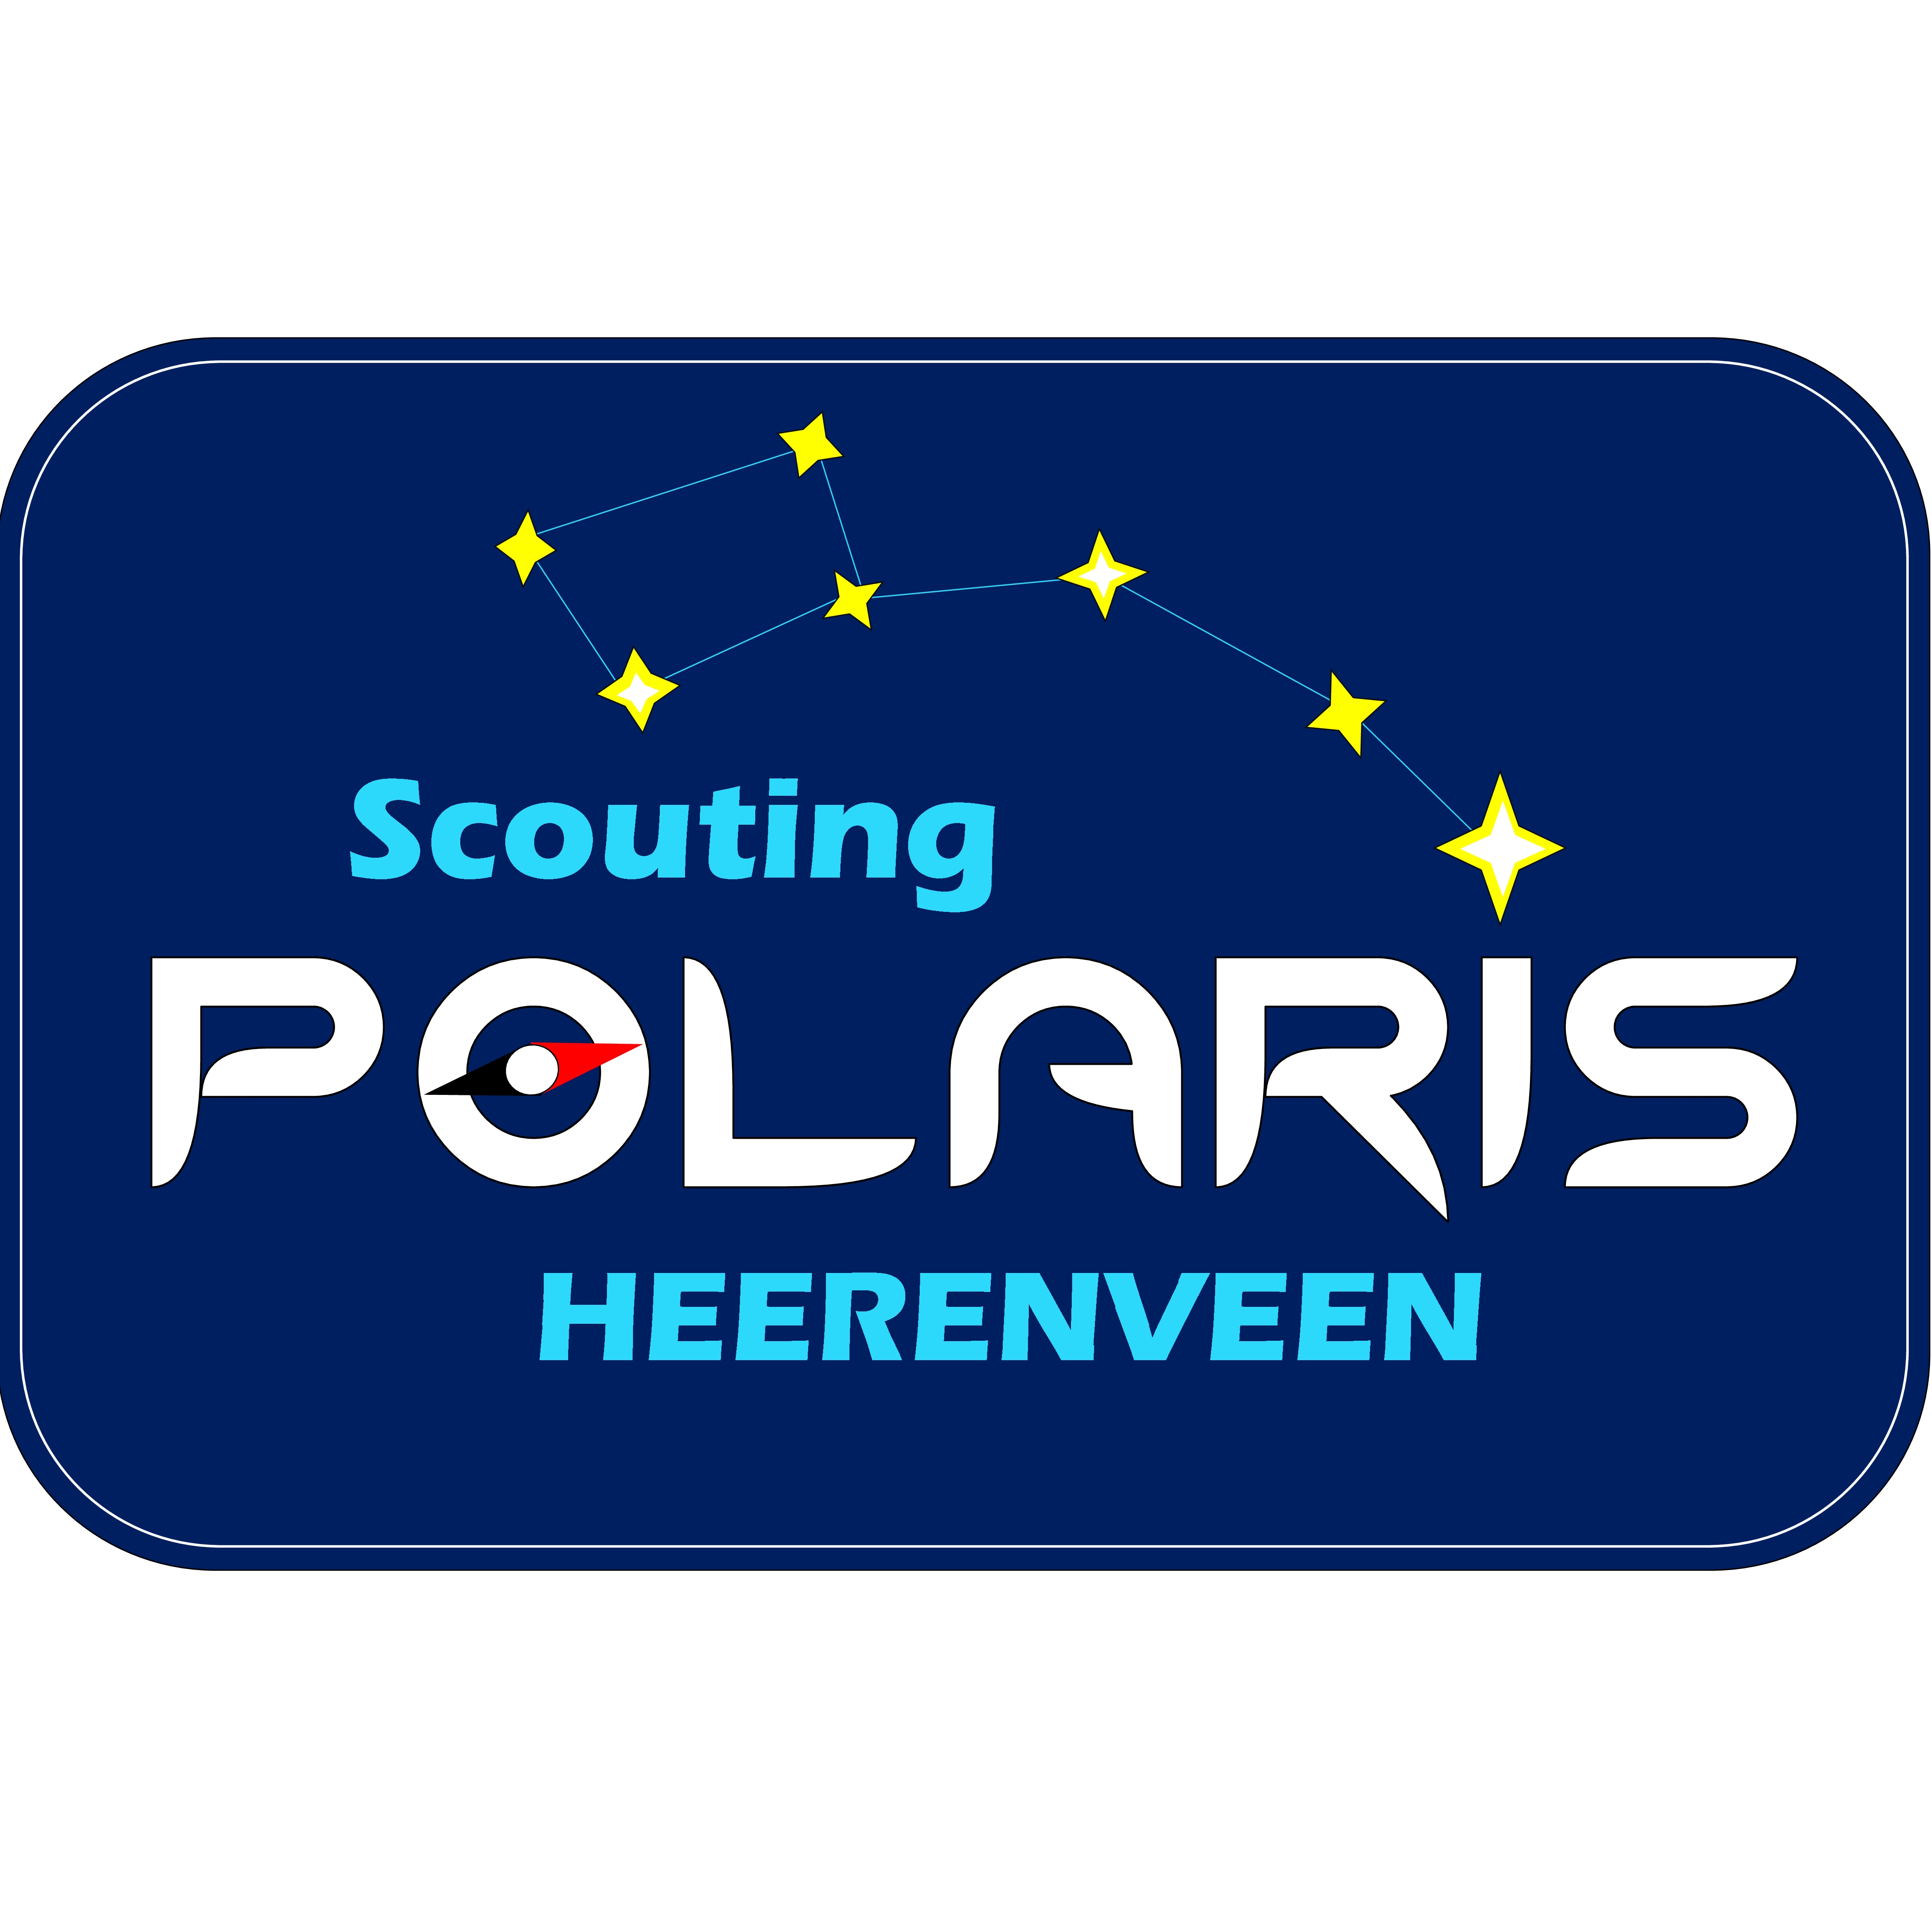 Scouting Polaris Heerenveen